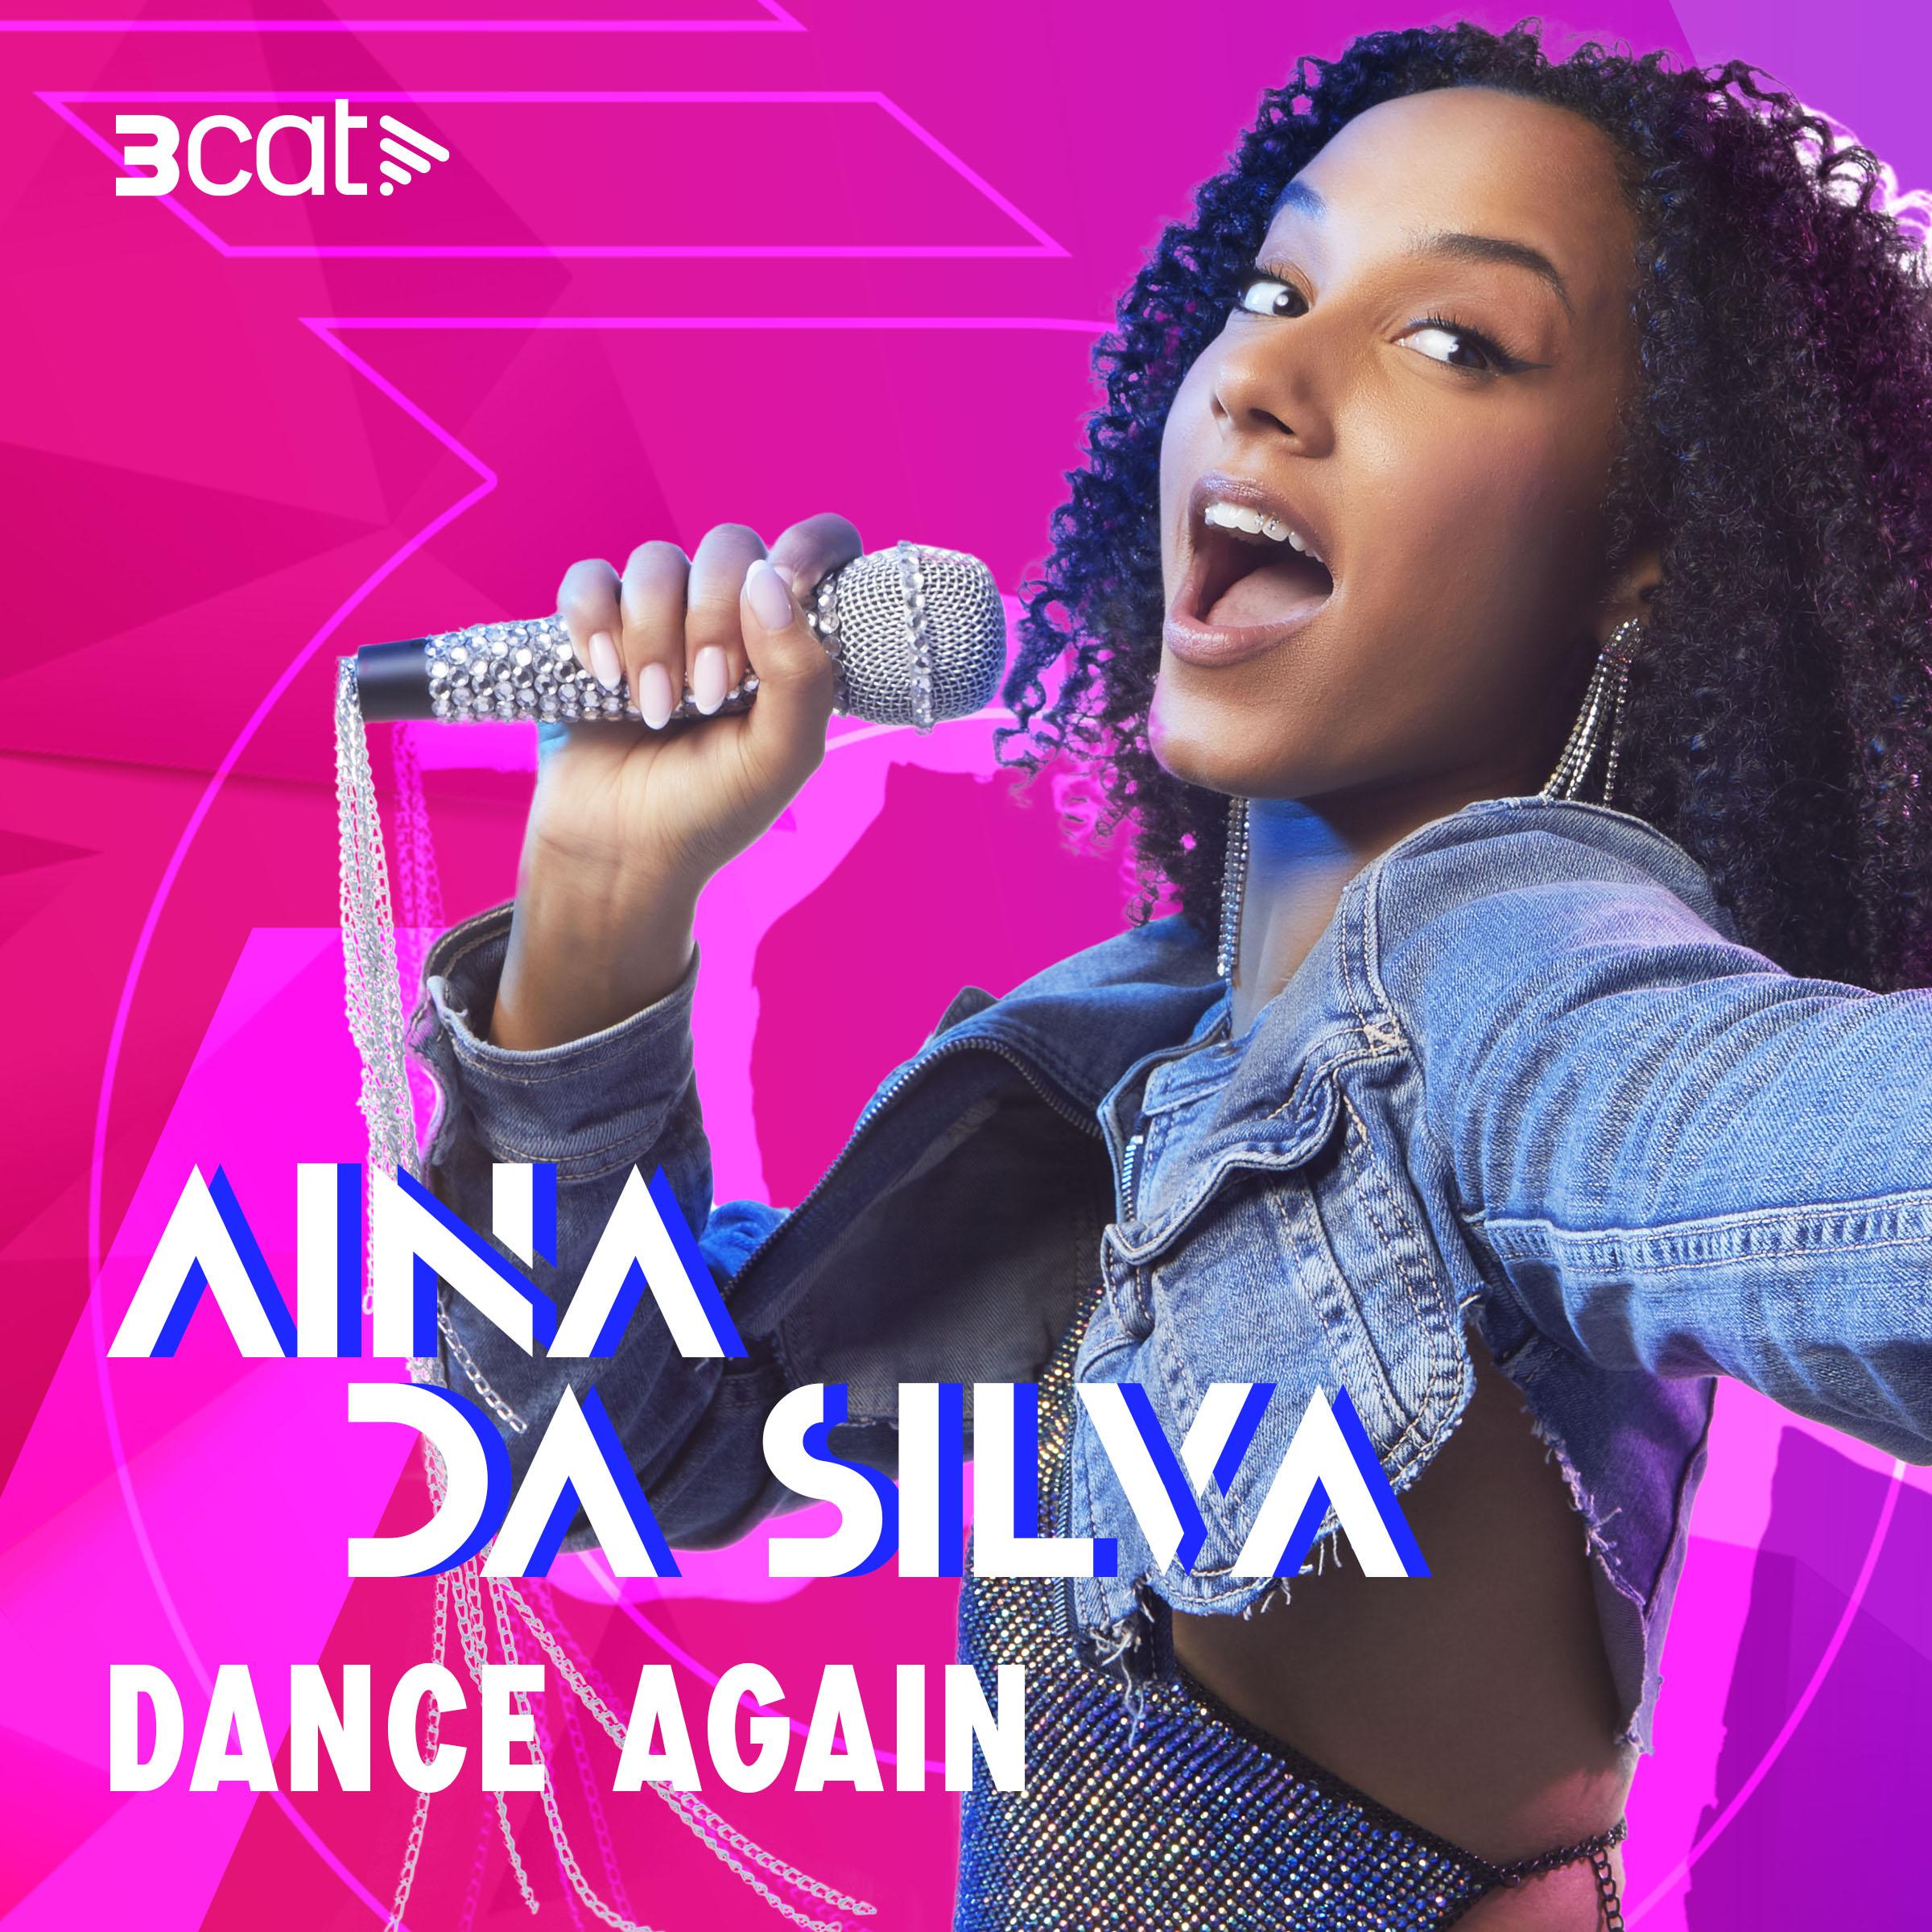 Aina Da Silva - Dance again (En Directe 3Cat)